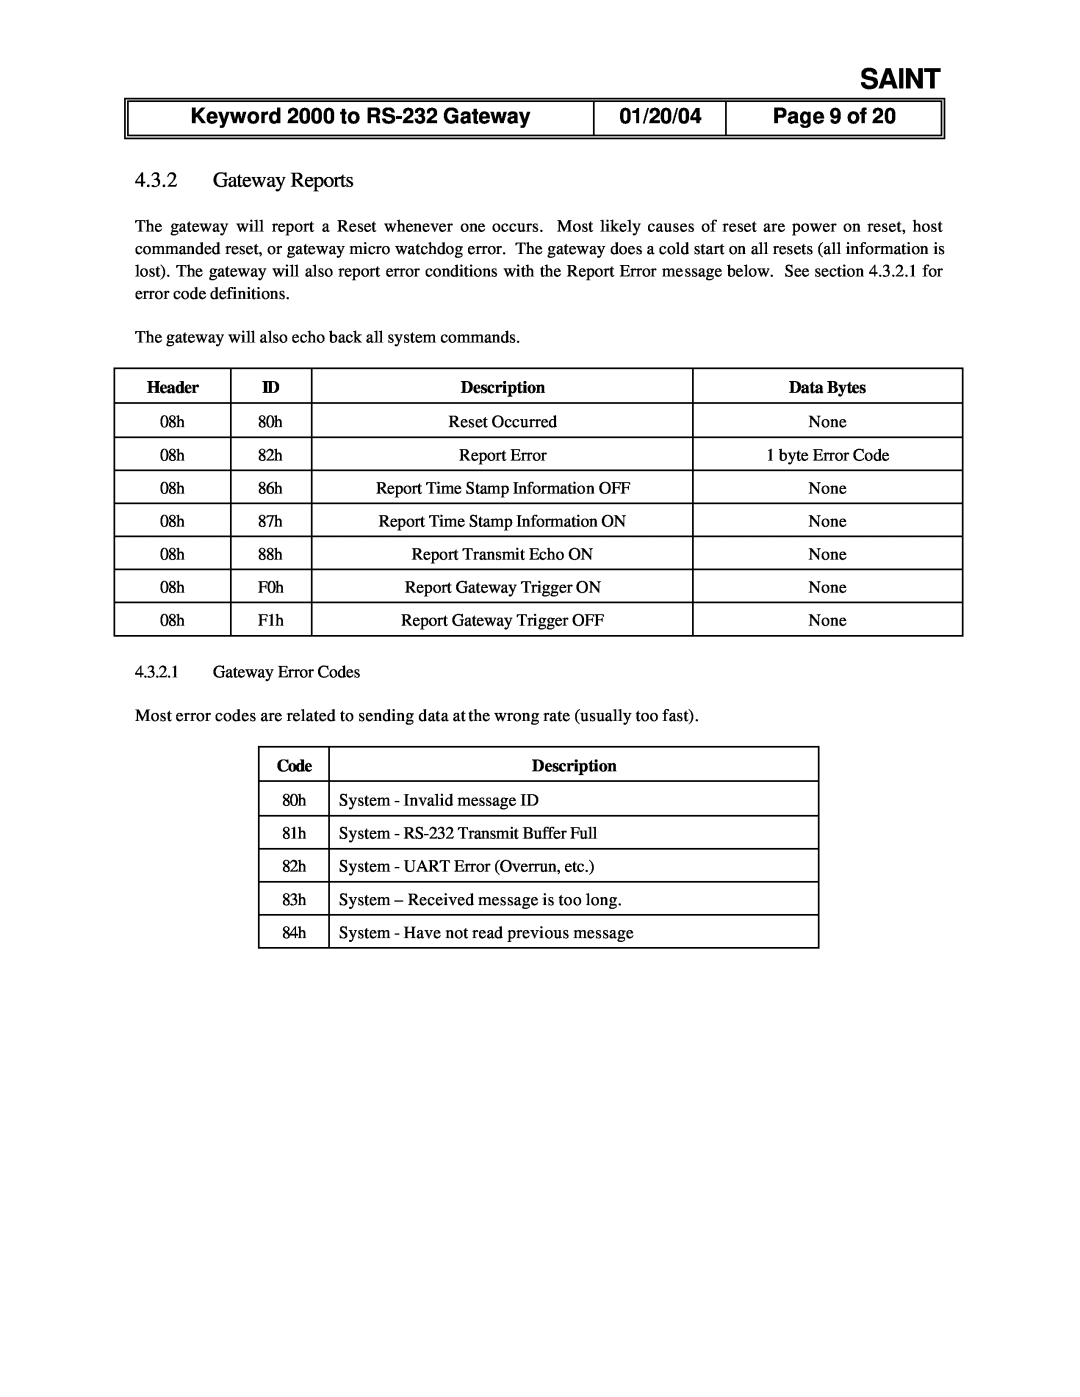 Delphi manual Page 9 of, 4.3.2Gateway Reports, Saint, Keyword 2000 to RS-232Gateway, 01/20/04 